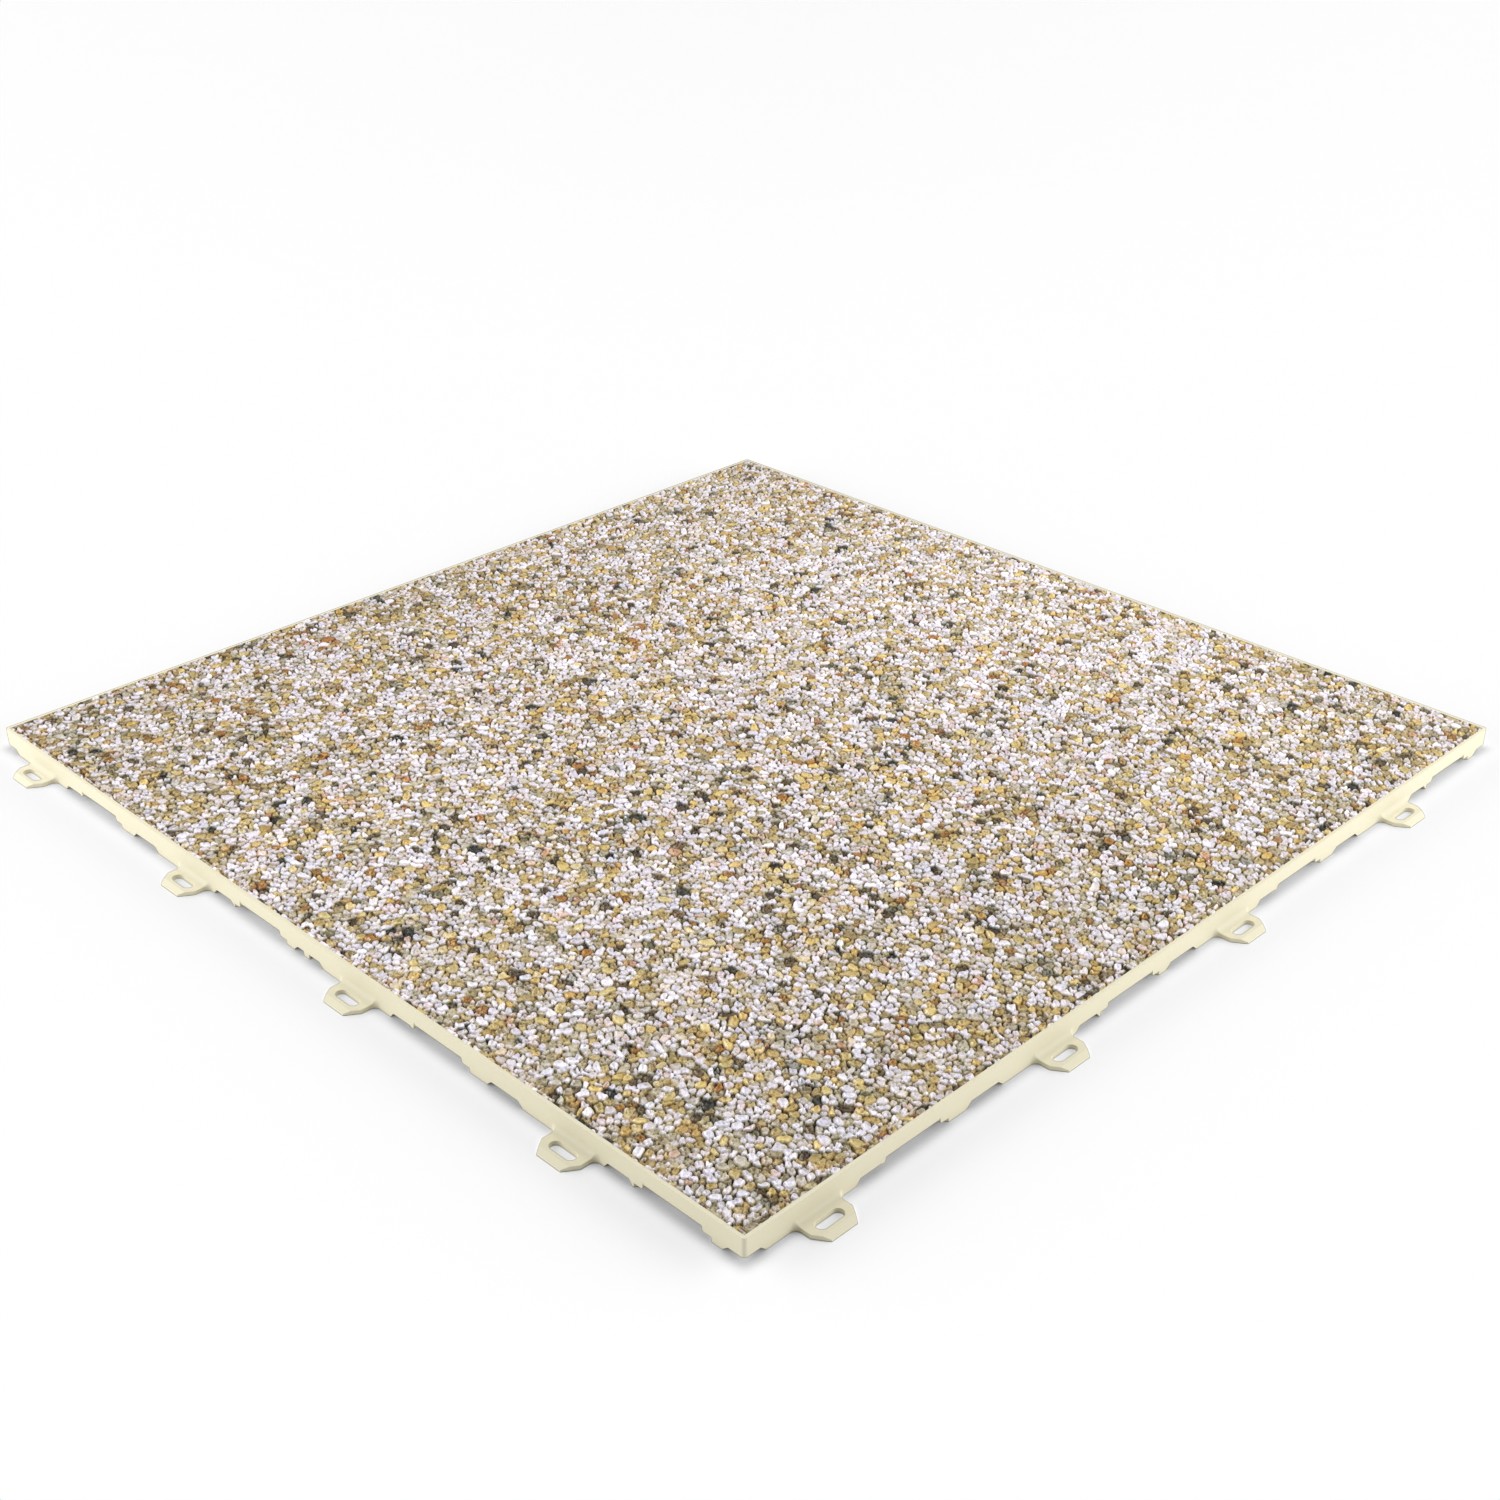 Klick Steinteppich im Format 500 x 500 x 11 mm in der Farbe Quarz Sand